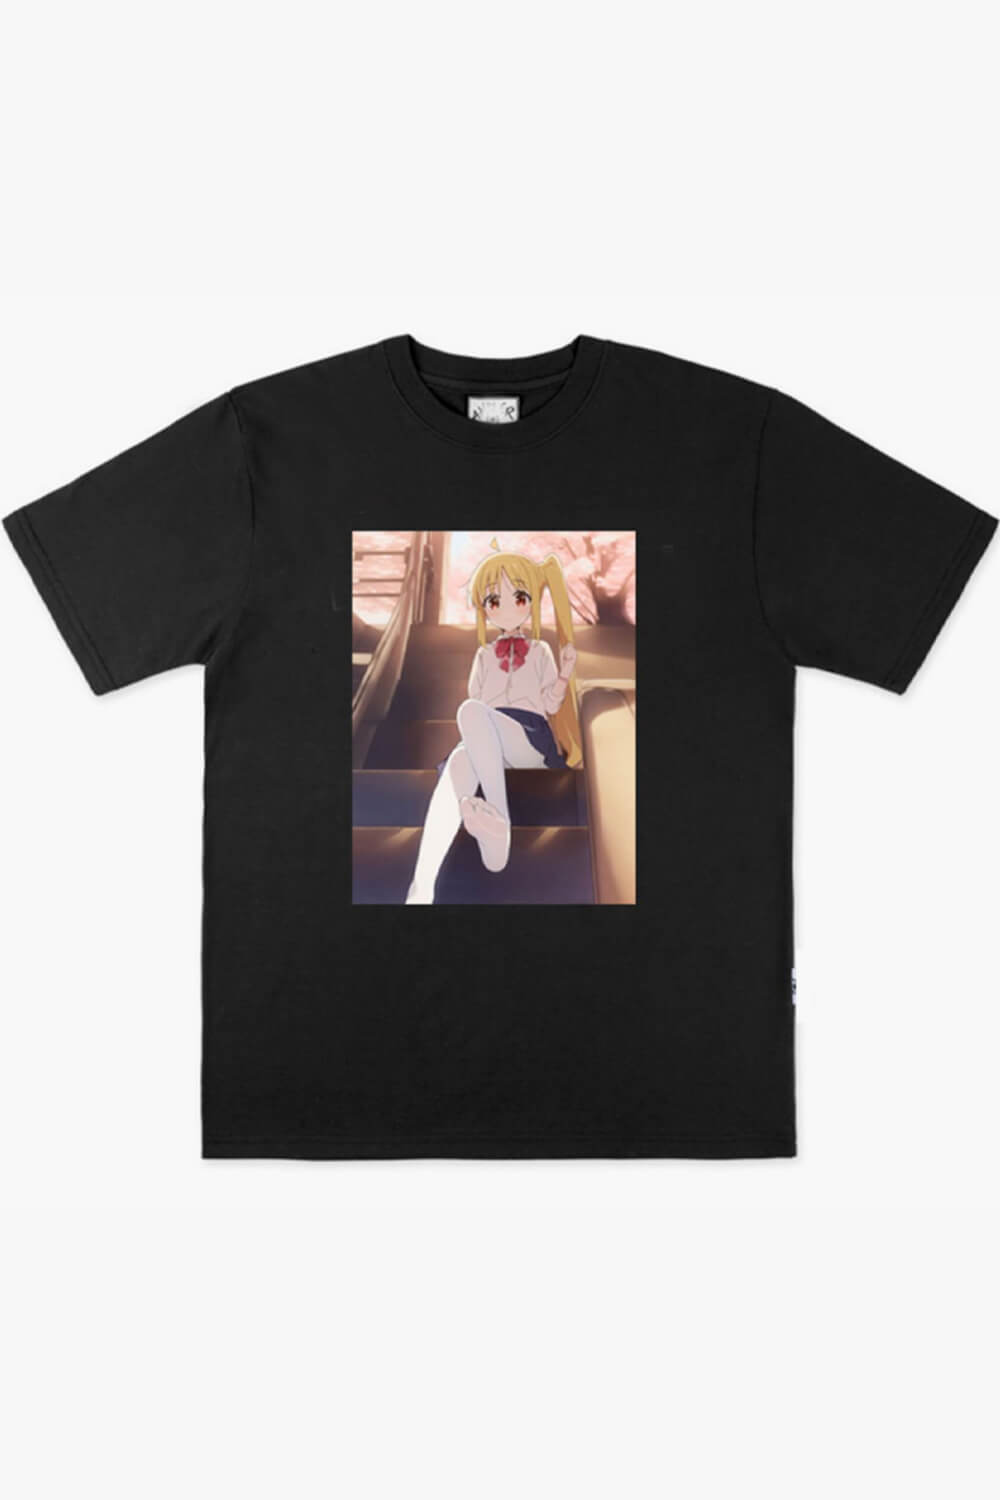 Himouto Umaru-chan Foot Animecore T-Shirt